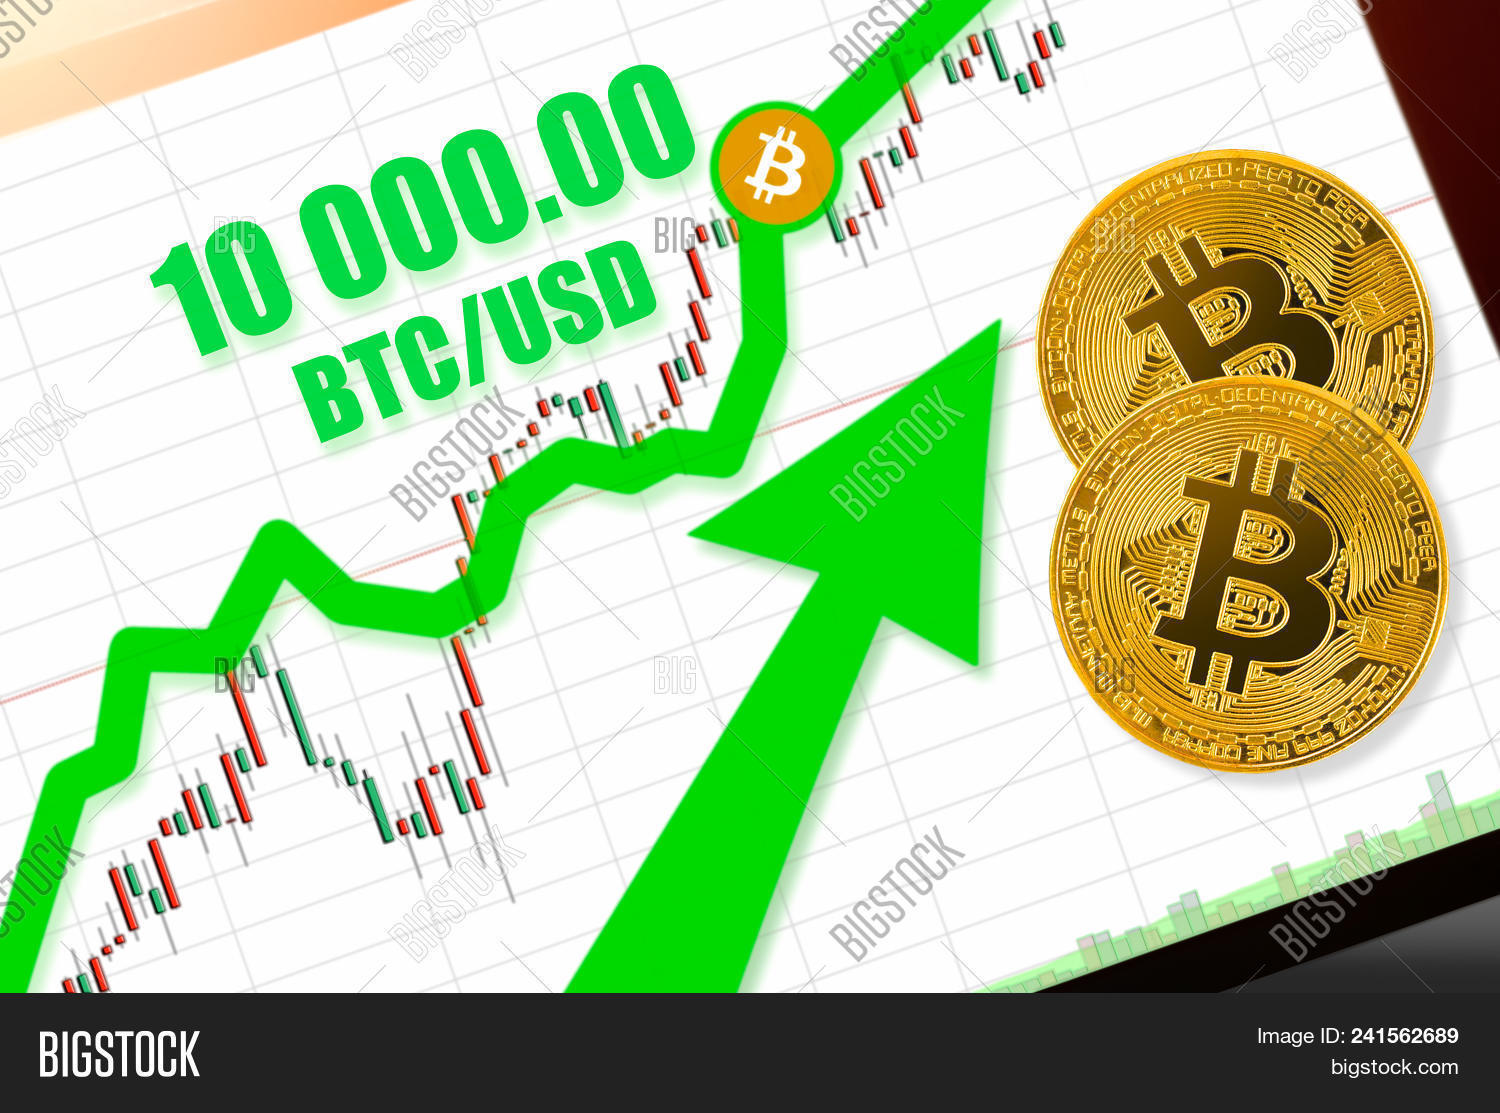 Convert BTC to USDC - Bitcoin to USD Coin Converter | CoinCodex